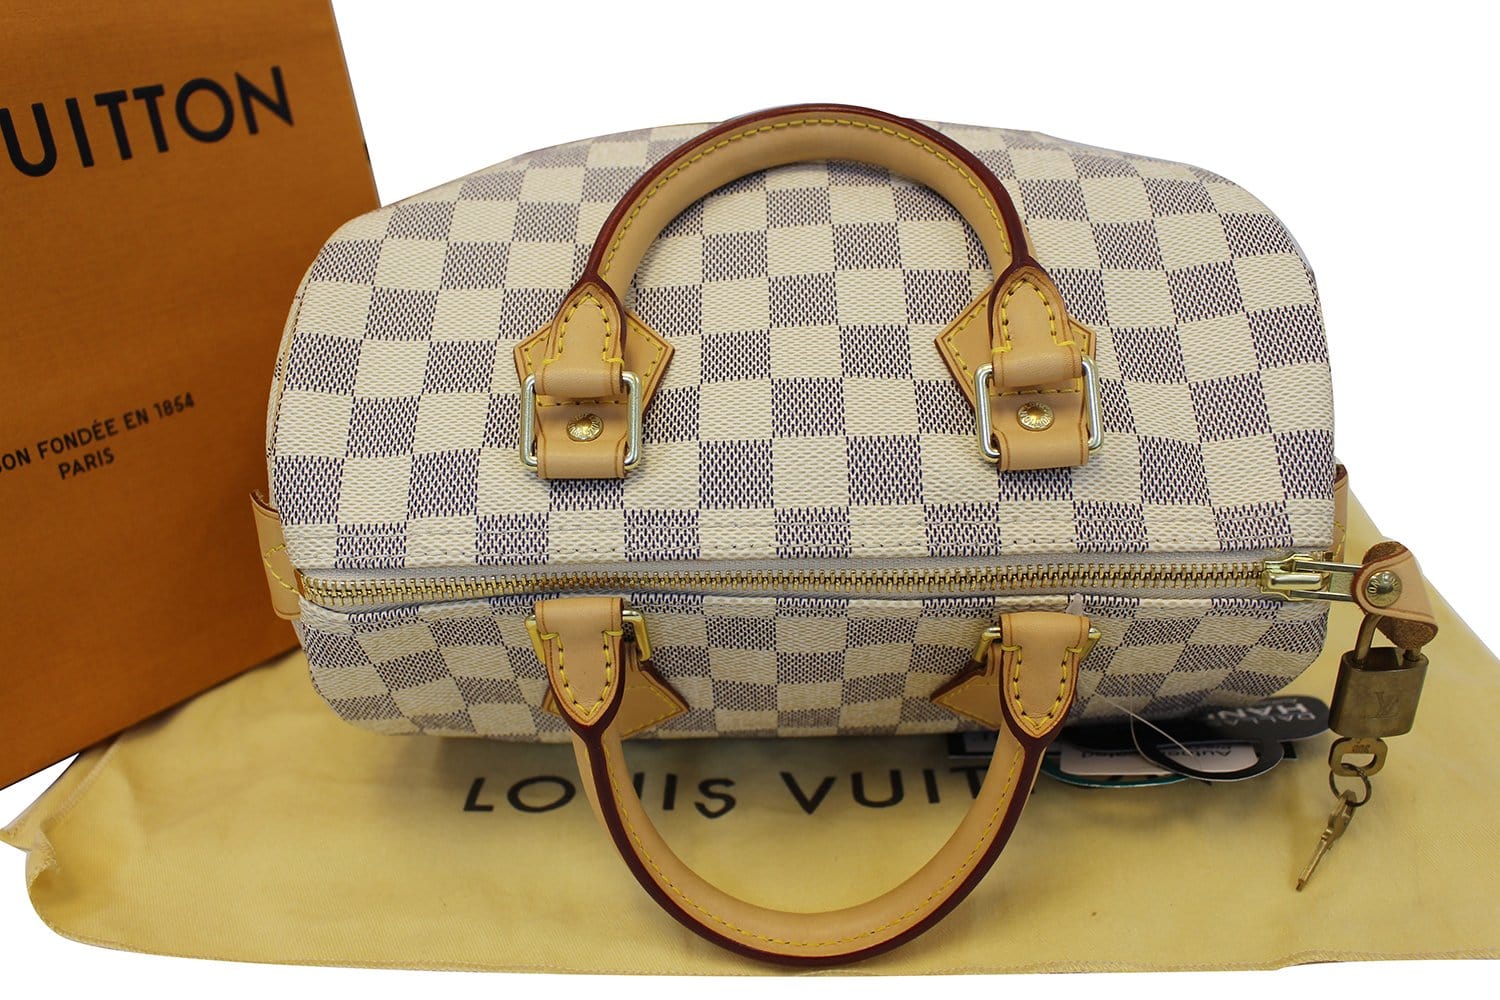 ❌SOLD❌ Excellent Condition Louis Vuitton LV Speedy 25 in Damier Azur GHW